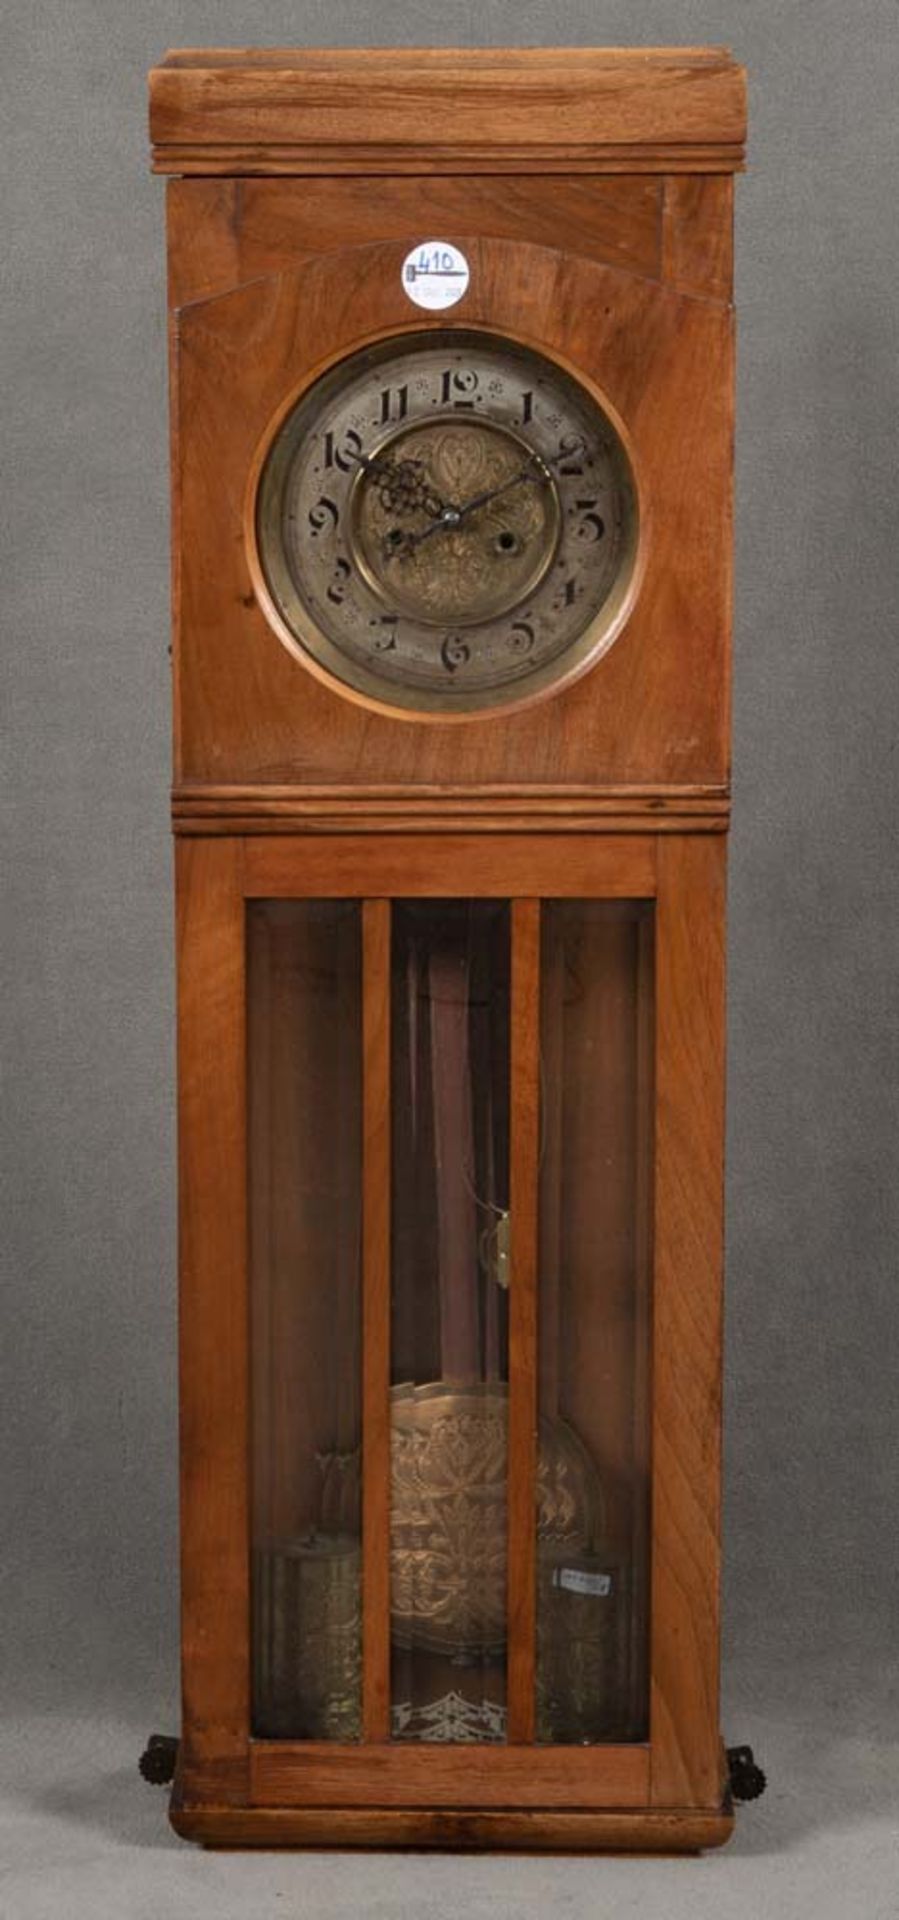 Wanduhr. Deutsch 20. Jh. Nussbaum furniert, Uhrwerk sign. Junghans, H=88 cm, B=28 cm, T=11,5 cm. (Fu